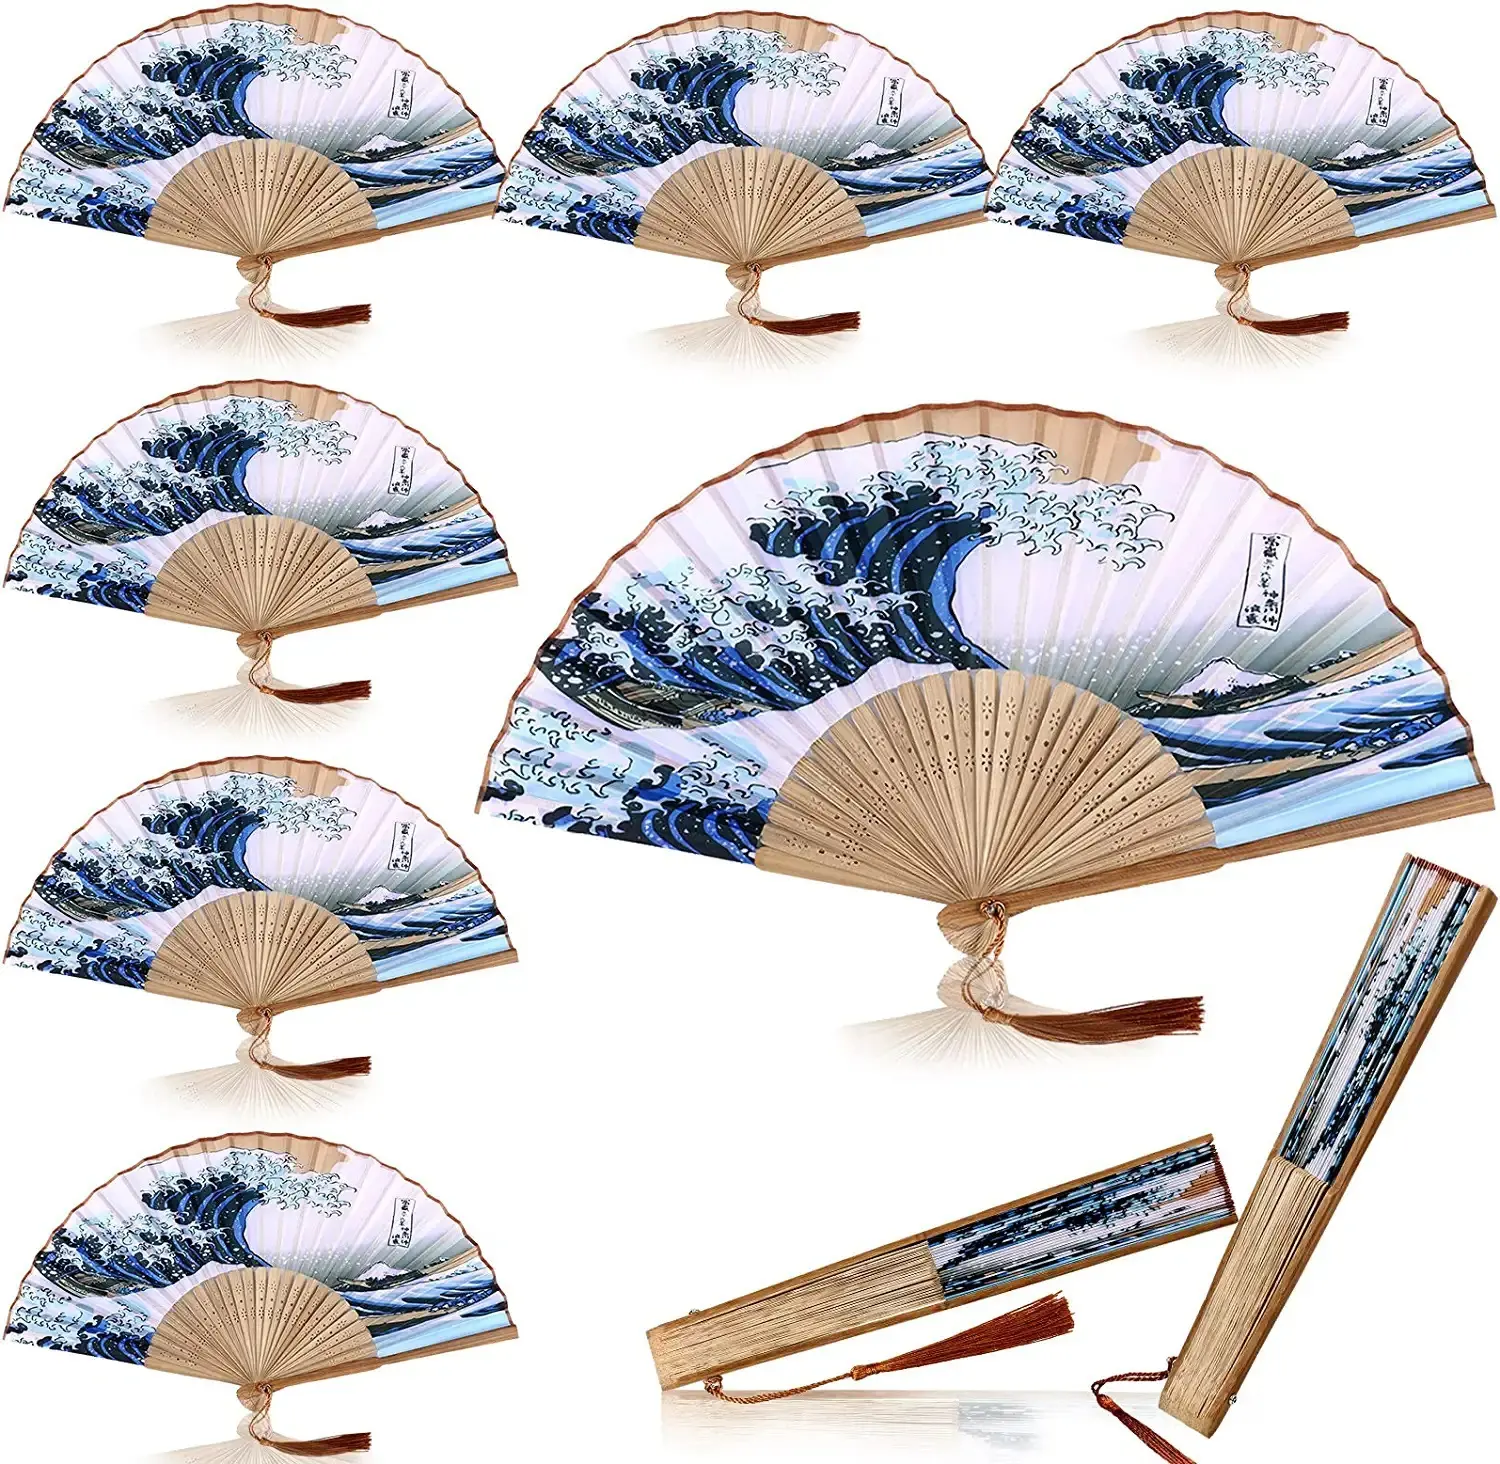 Ywbeyond bomboniere regali ventaglio pieghevole in bambù tenuto in mano ventagli pieghevoli in stile tradizionale giapponese